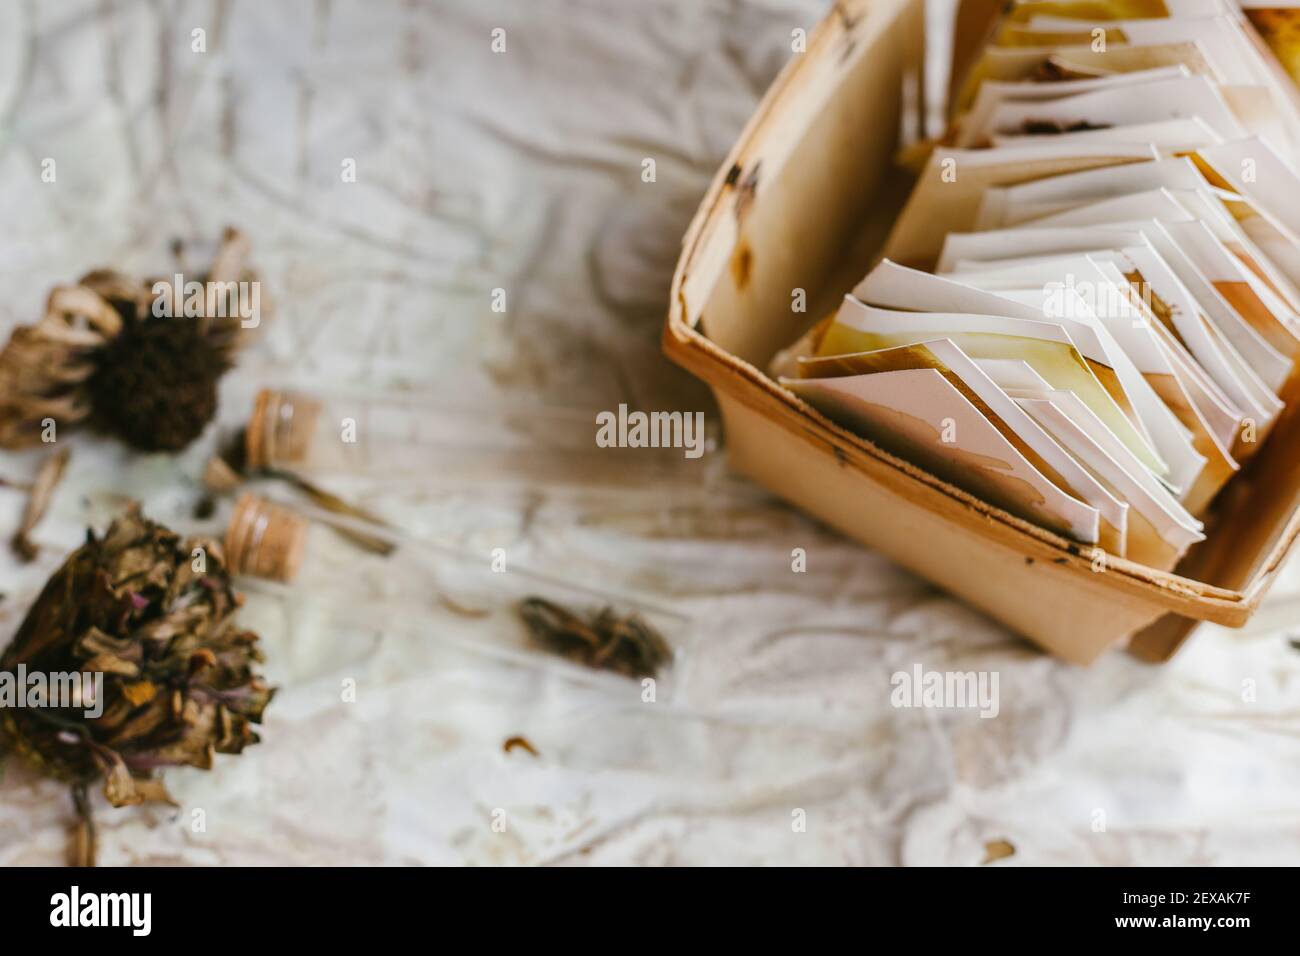 Ahorro de semillas de flores de Zinnia secas de varias maneras Foto de stock